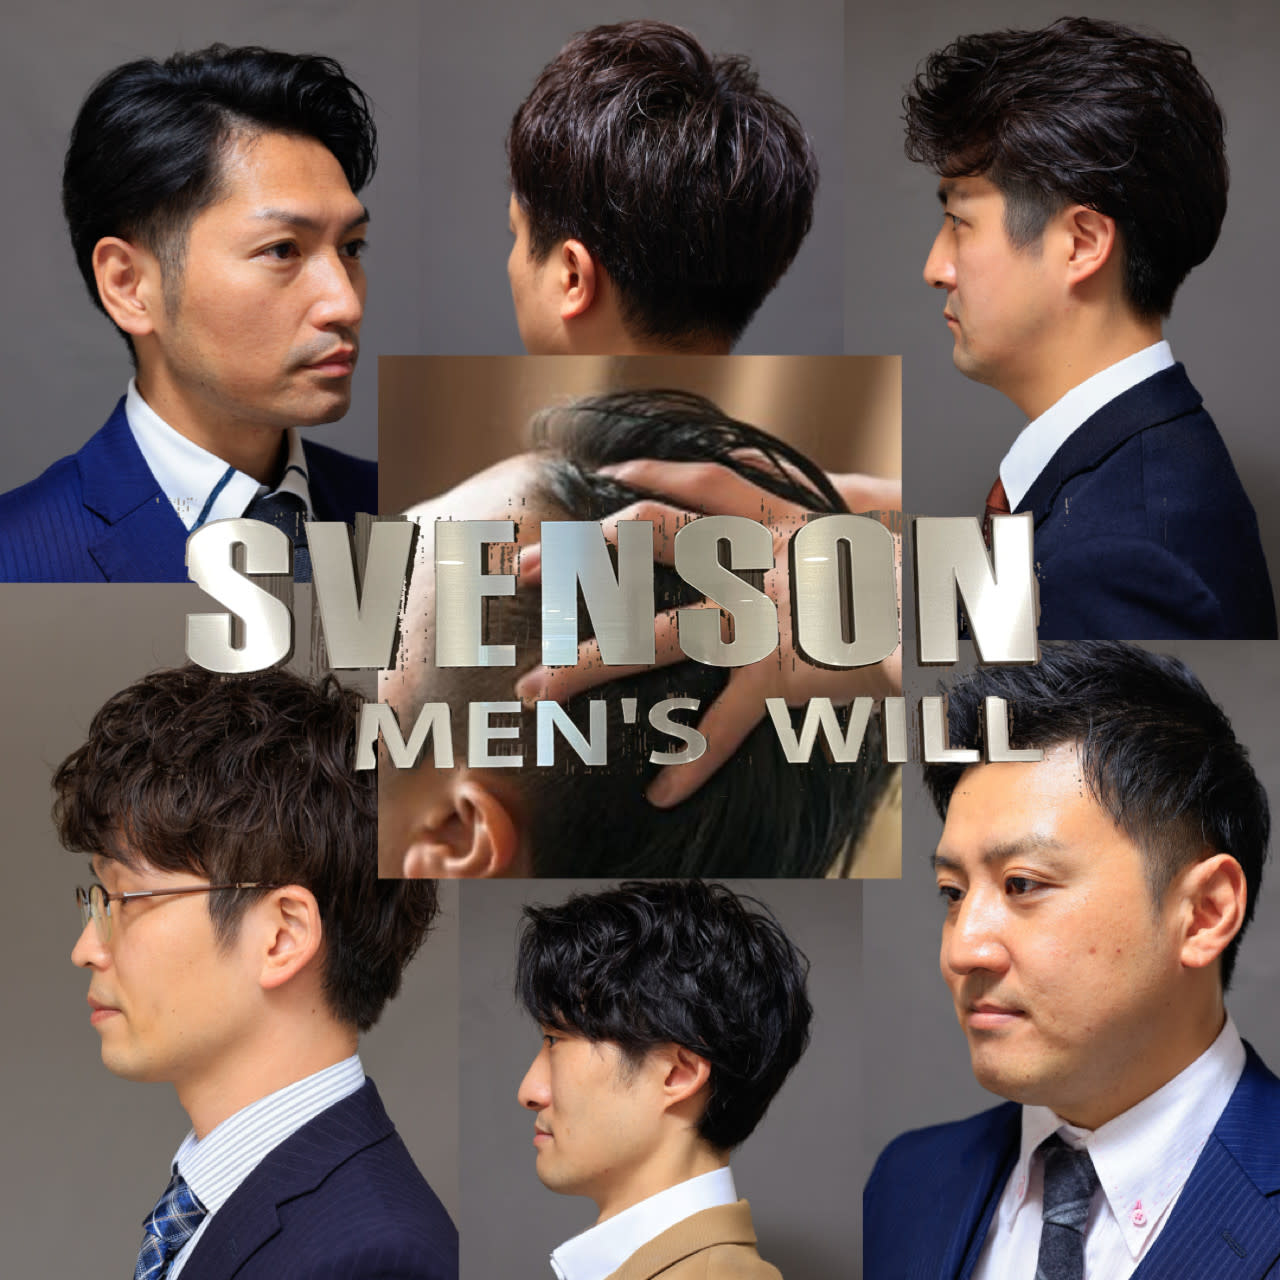 MEN'S WILL by SVENSON 広島スタジオのアイキャッチ画像